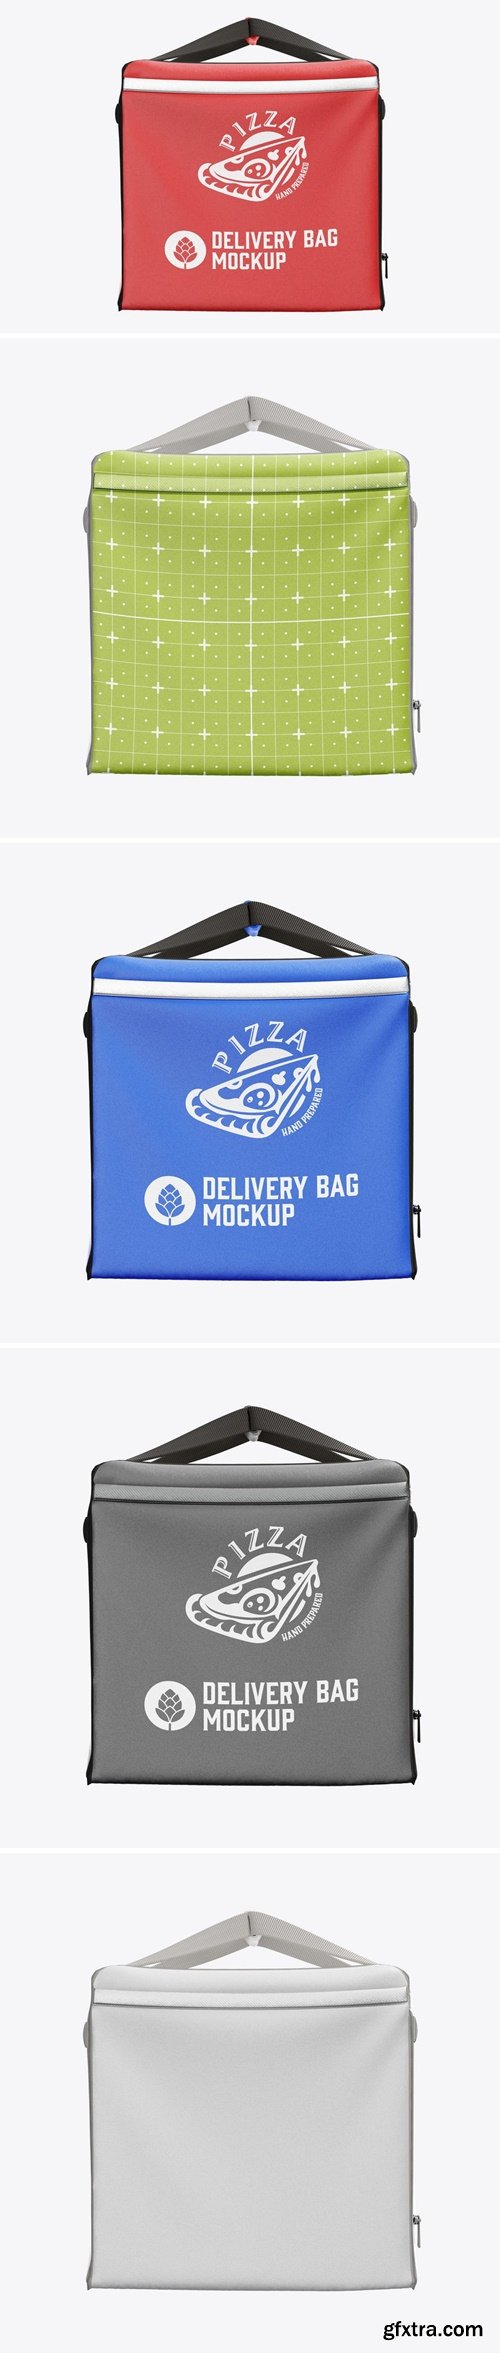 Big Delivery Bag Mockup 8A3UNXJ